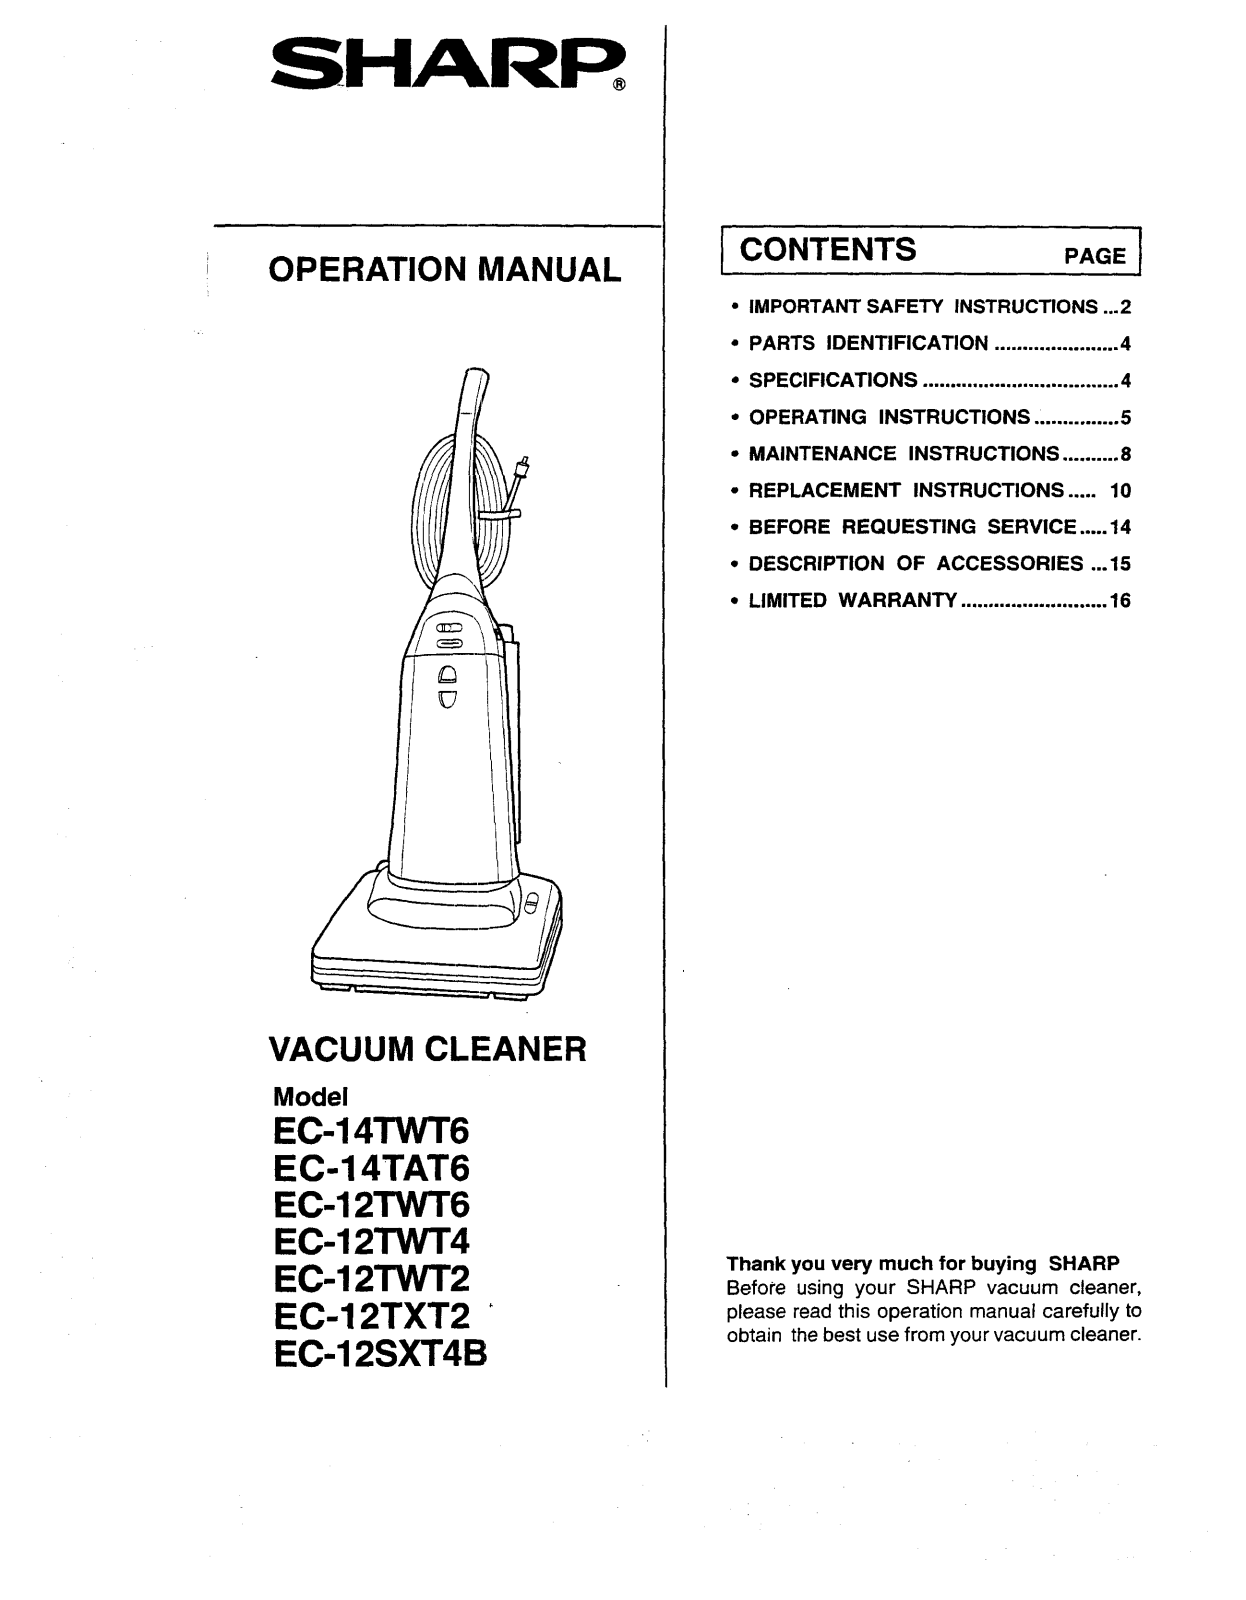 Sharp Ec-12twt4 Owner's Manual